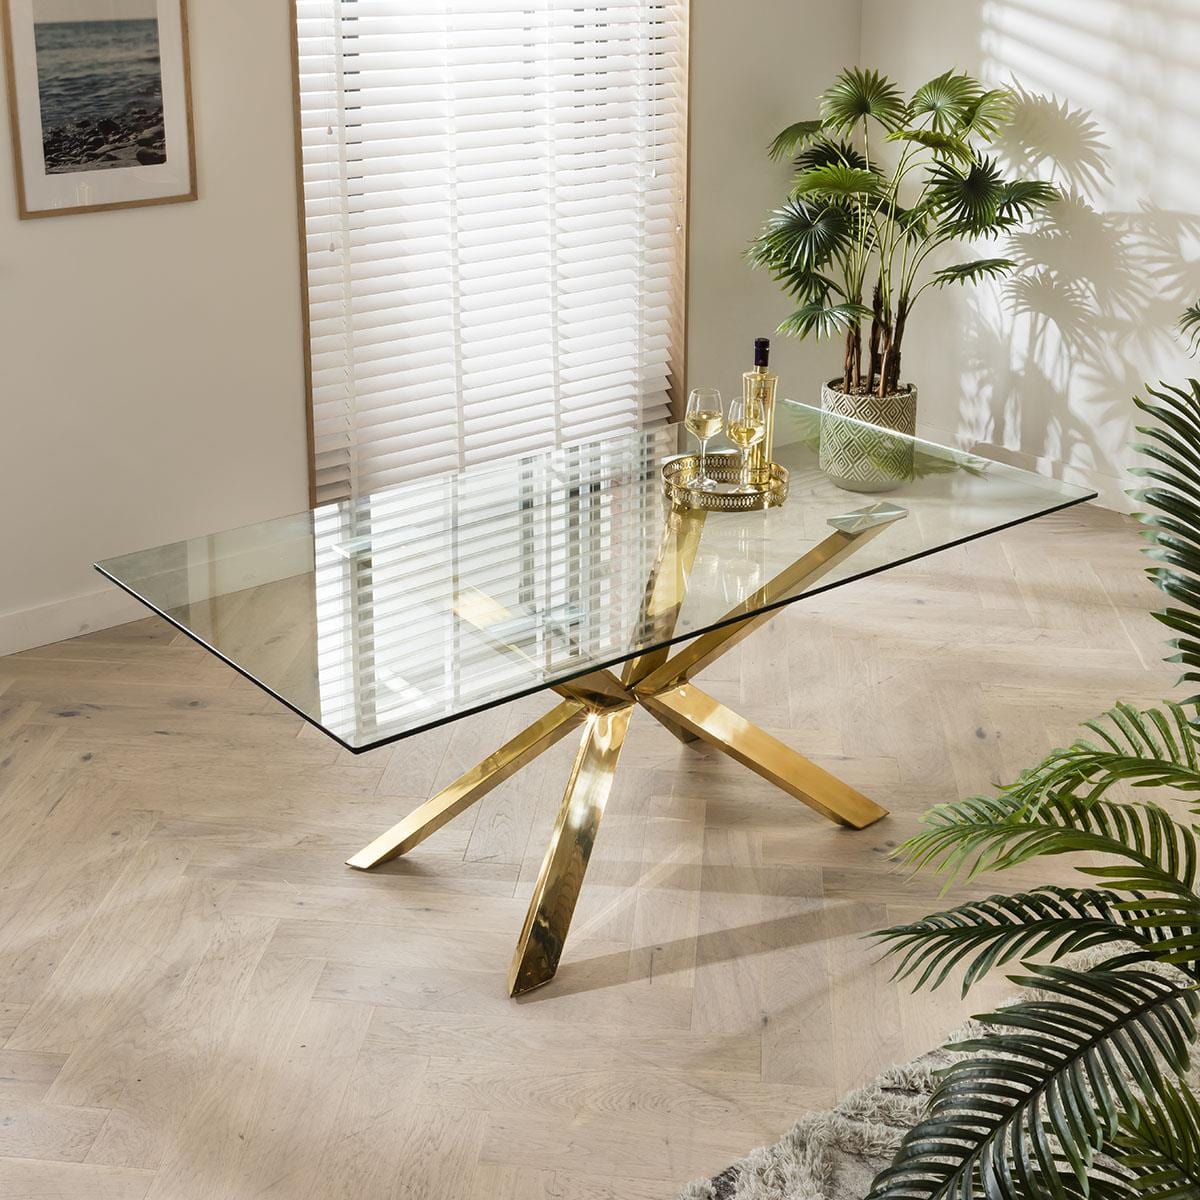 Quatropi Quatropi Dining Table 6 Seater Glass Top & Gold Metal Pedistal 198x99cm